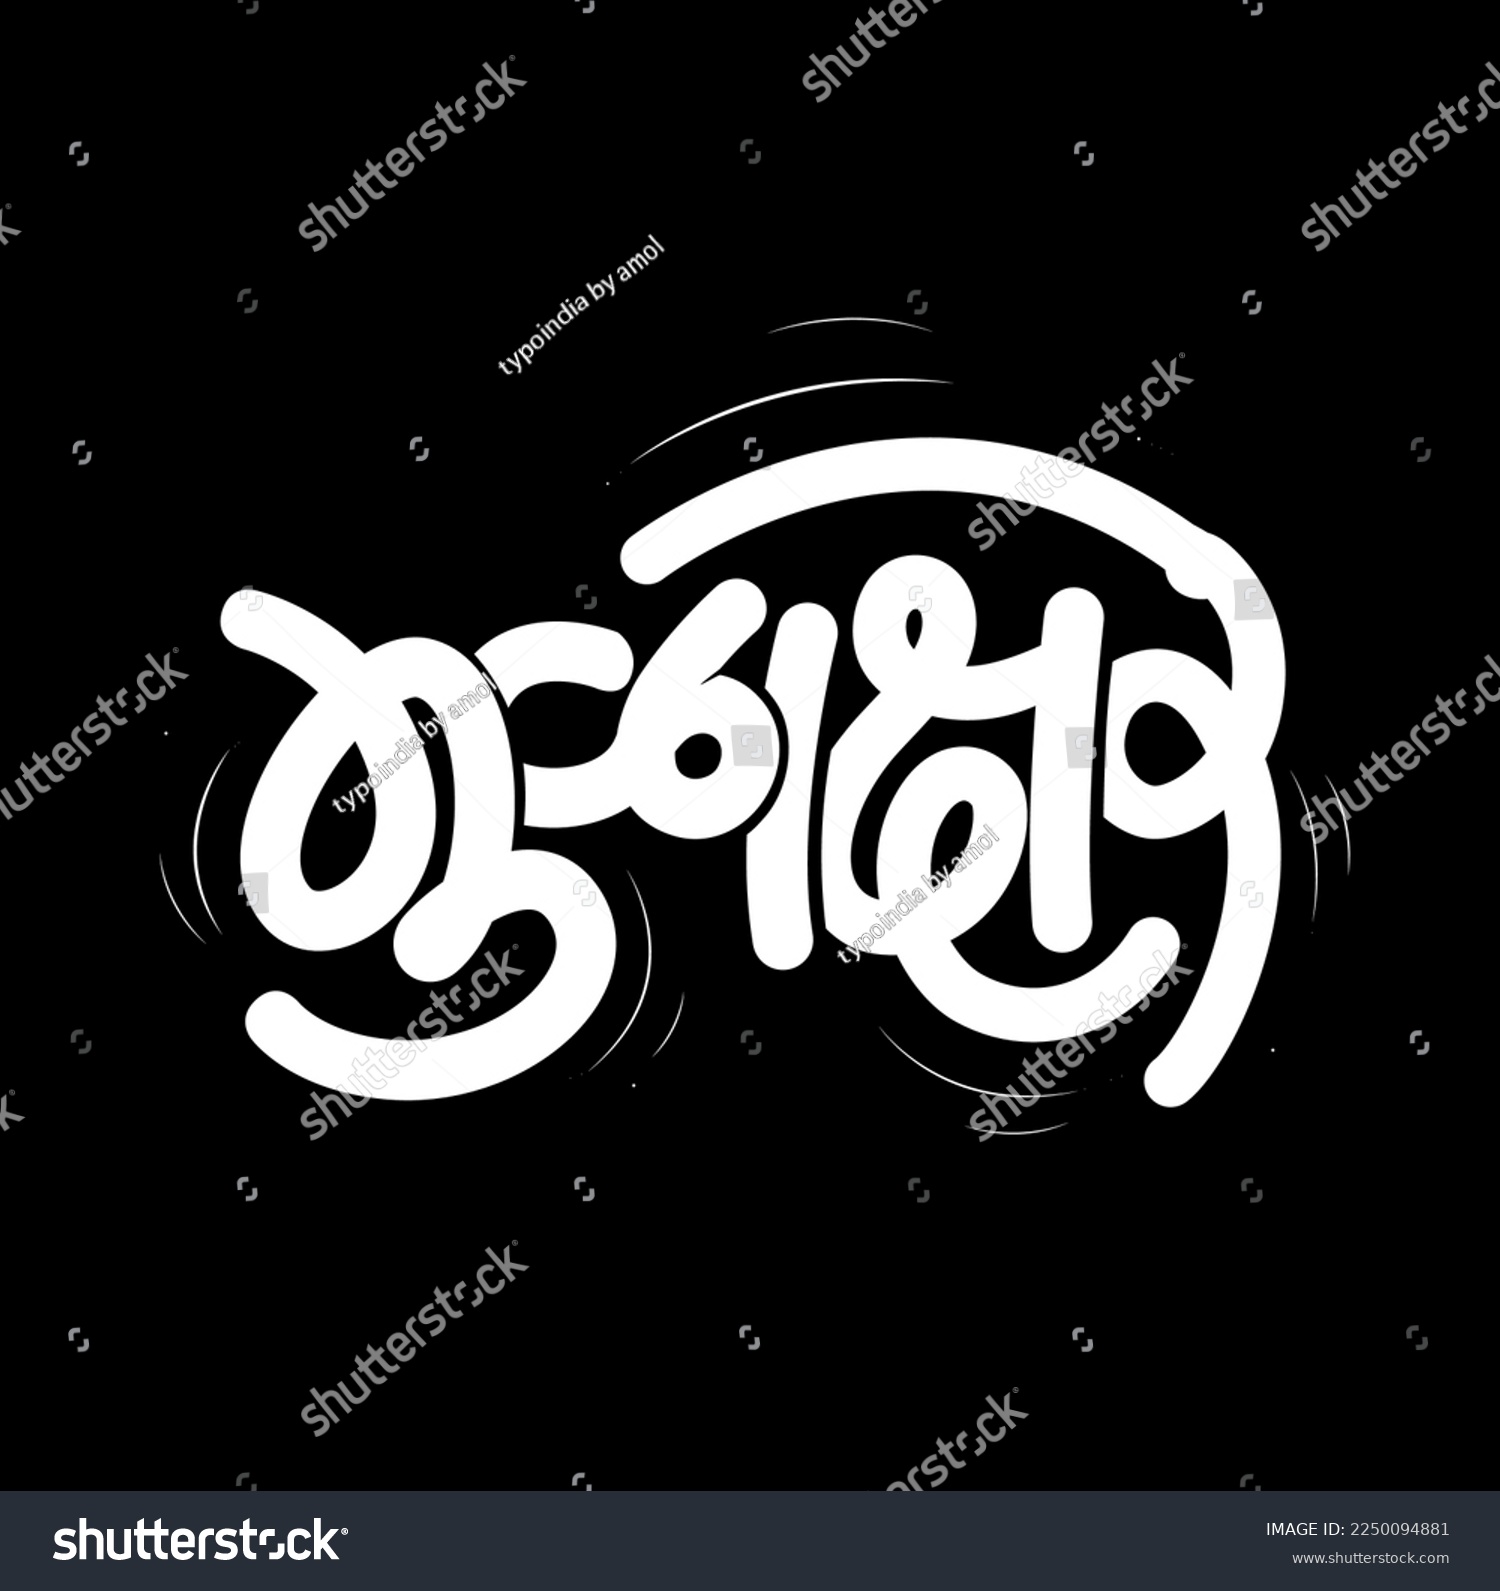 SVG of Alphabet (Mulakshare) word written in devanagari calligraphy. svg